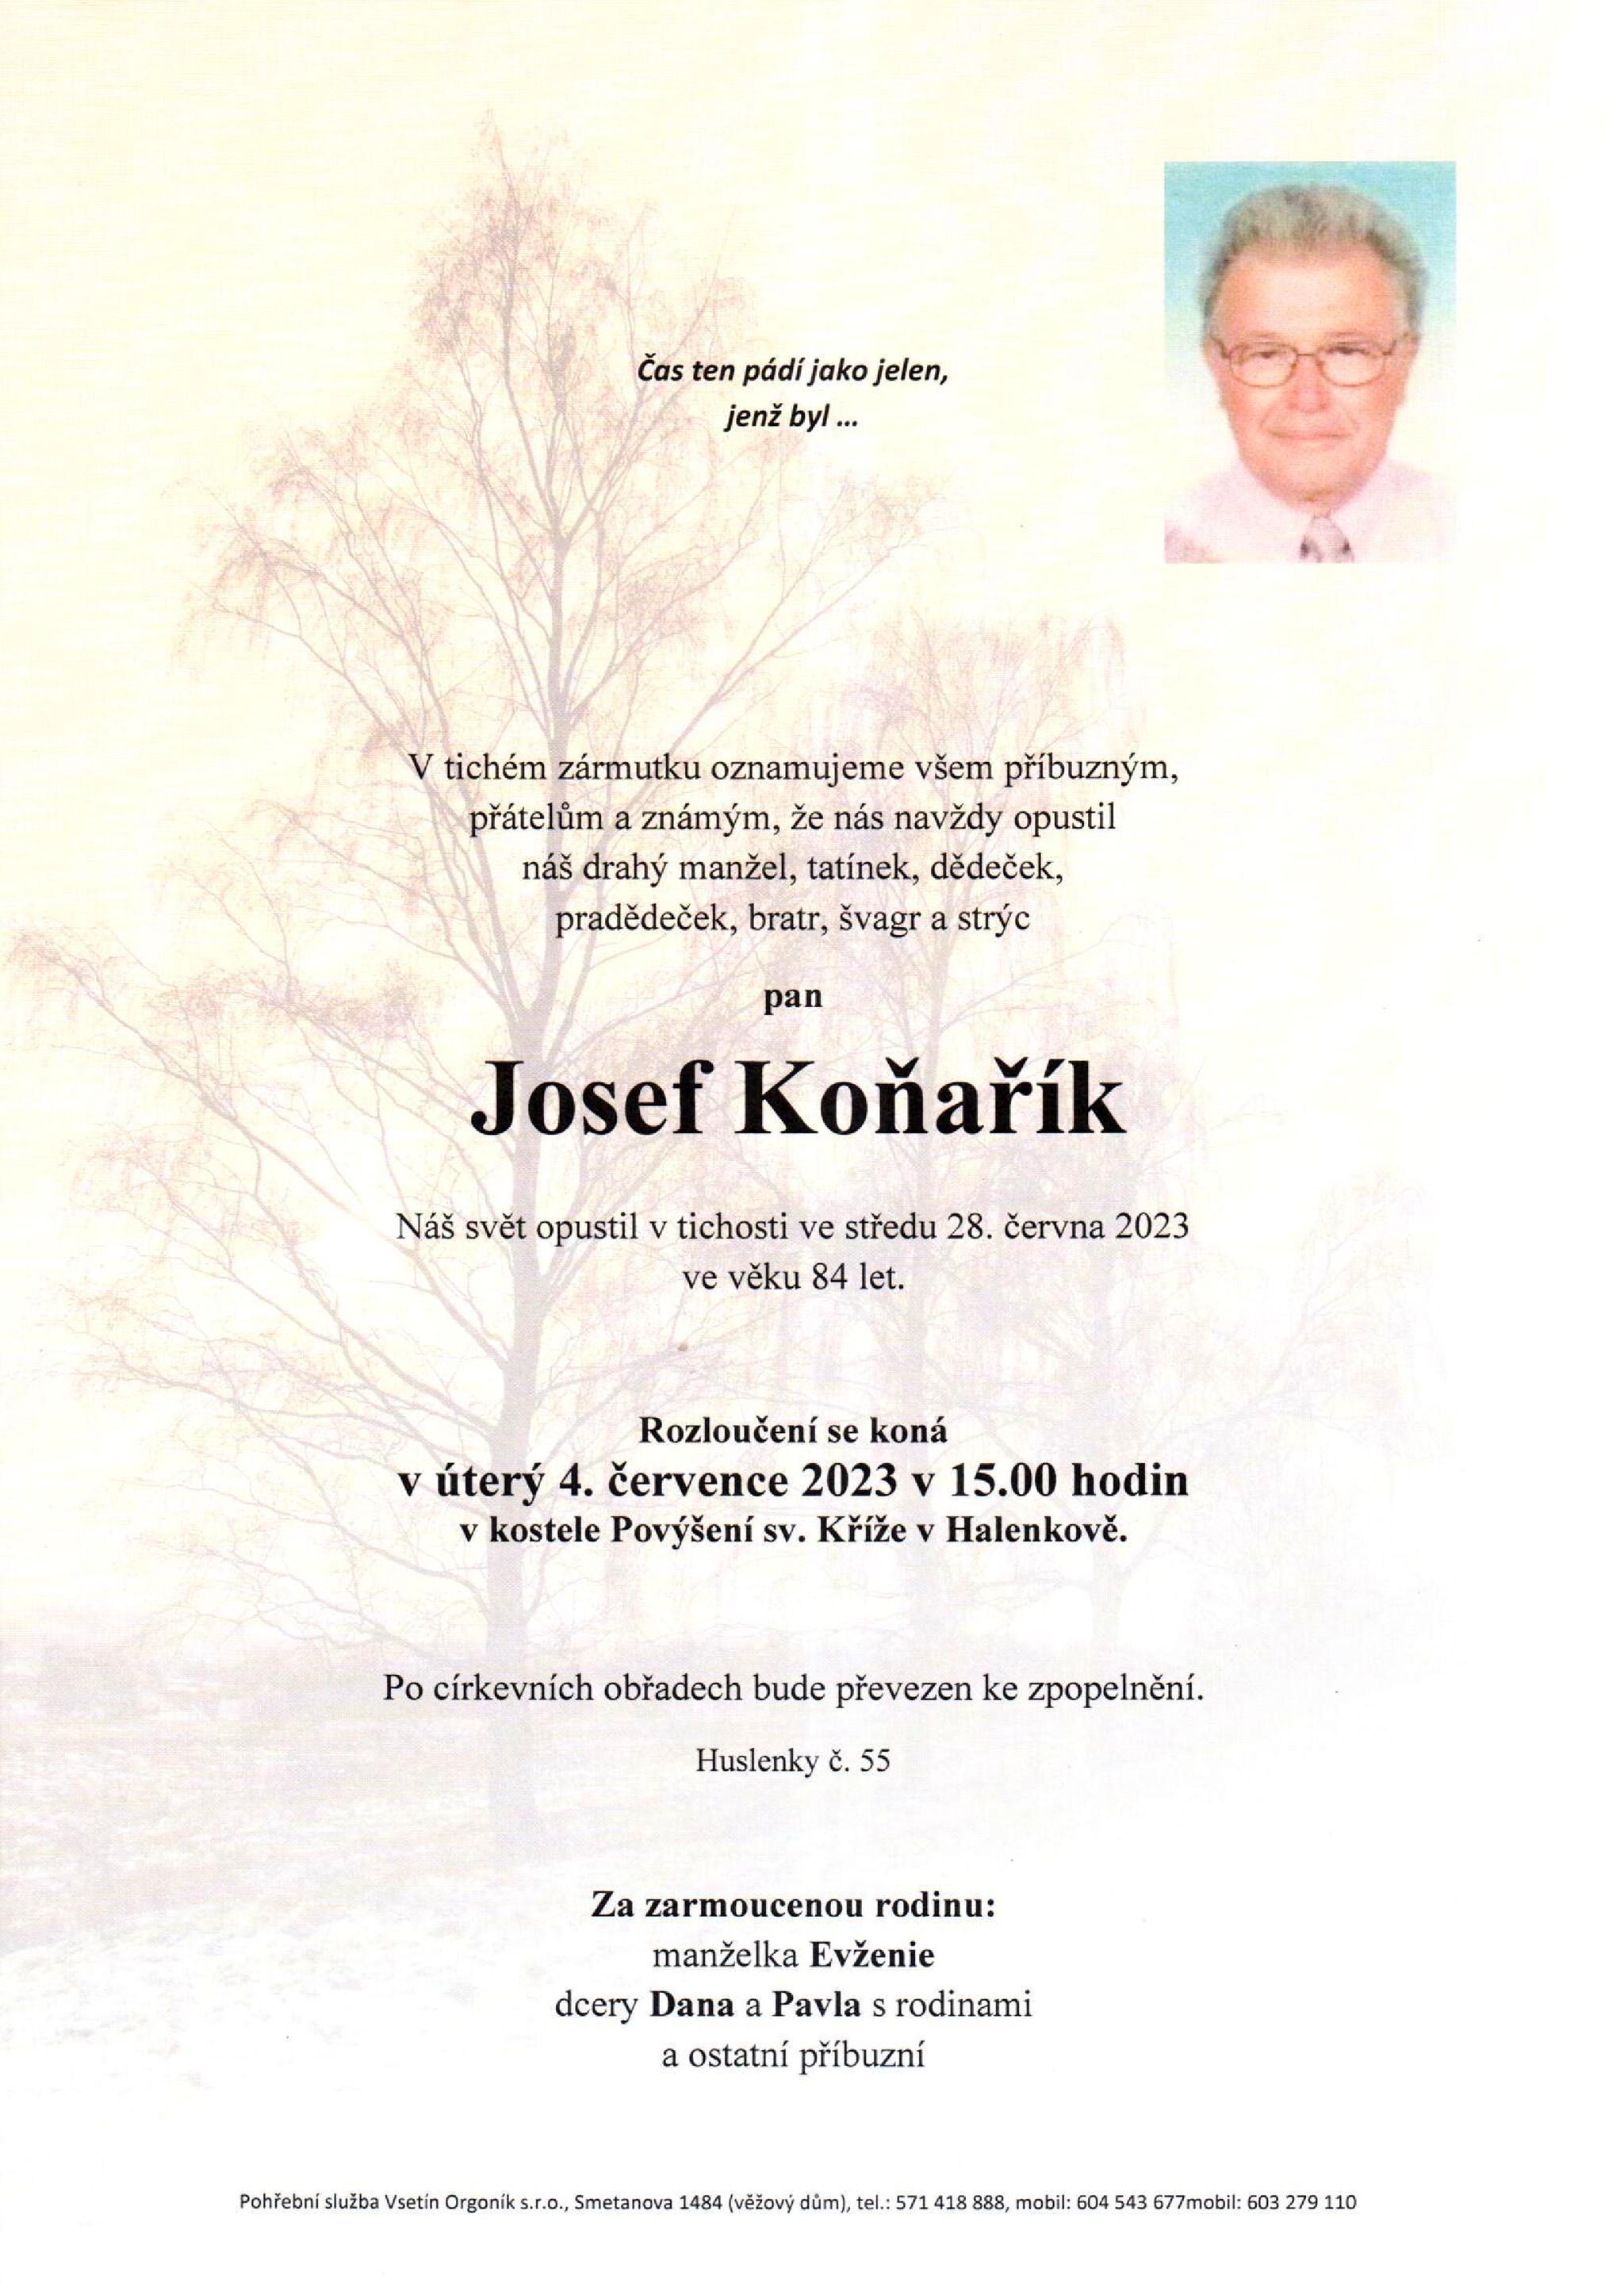 Josef Koňařík